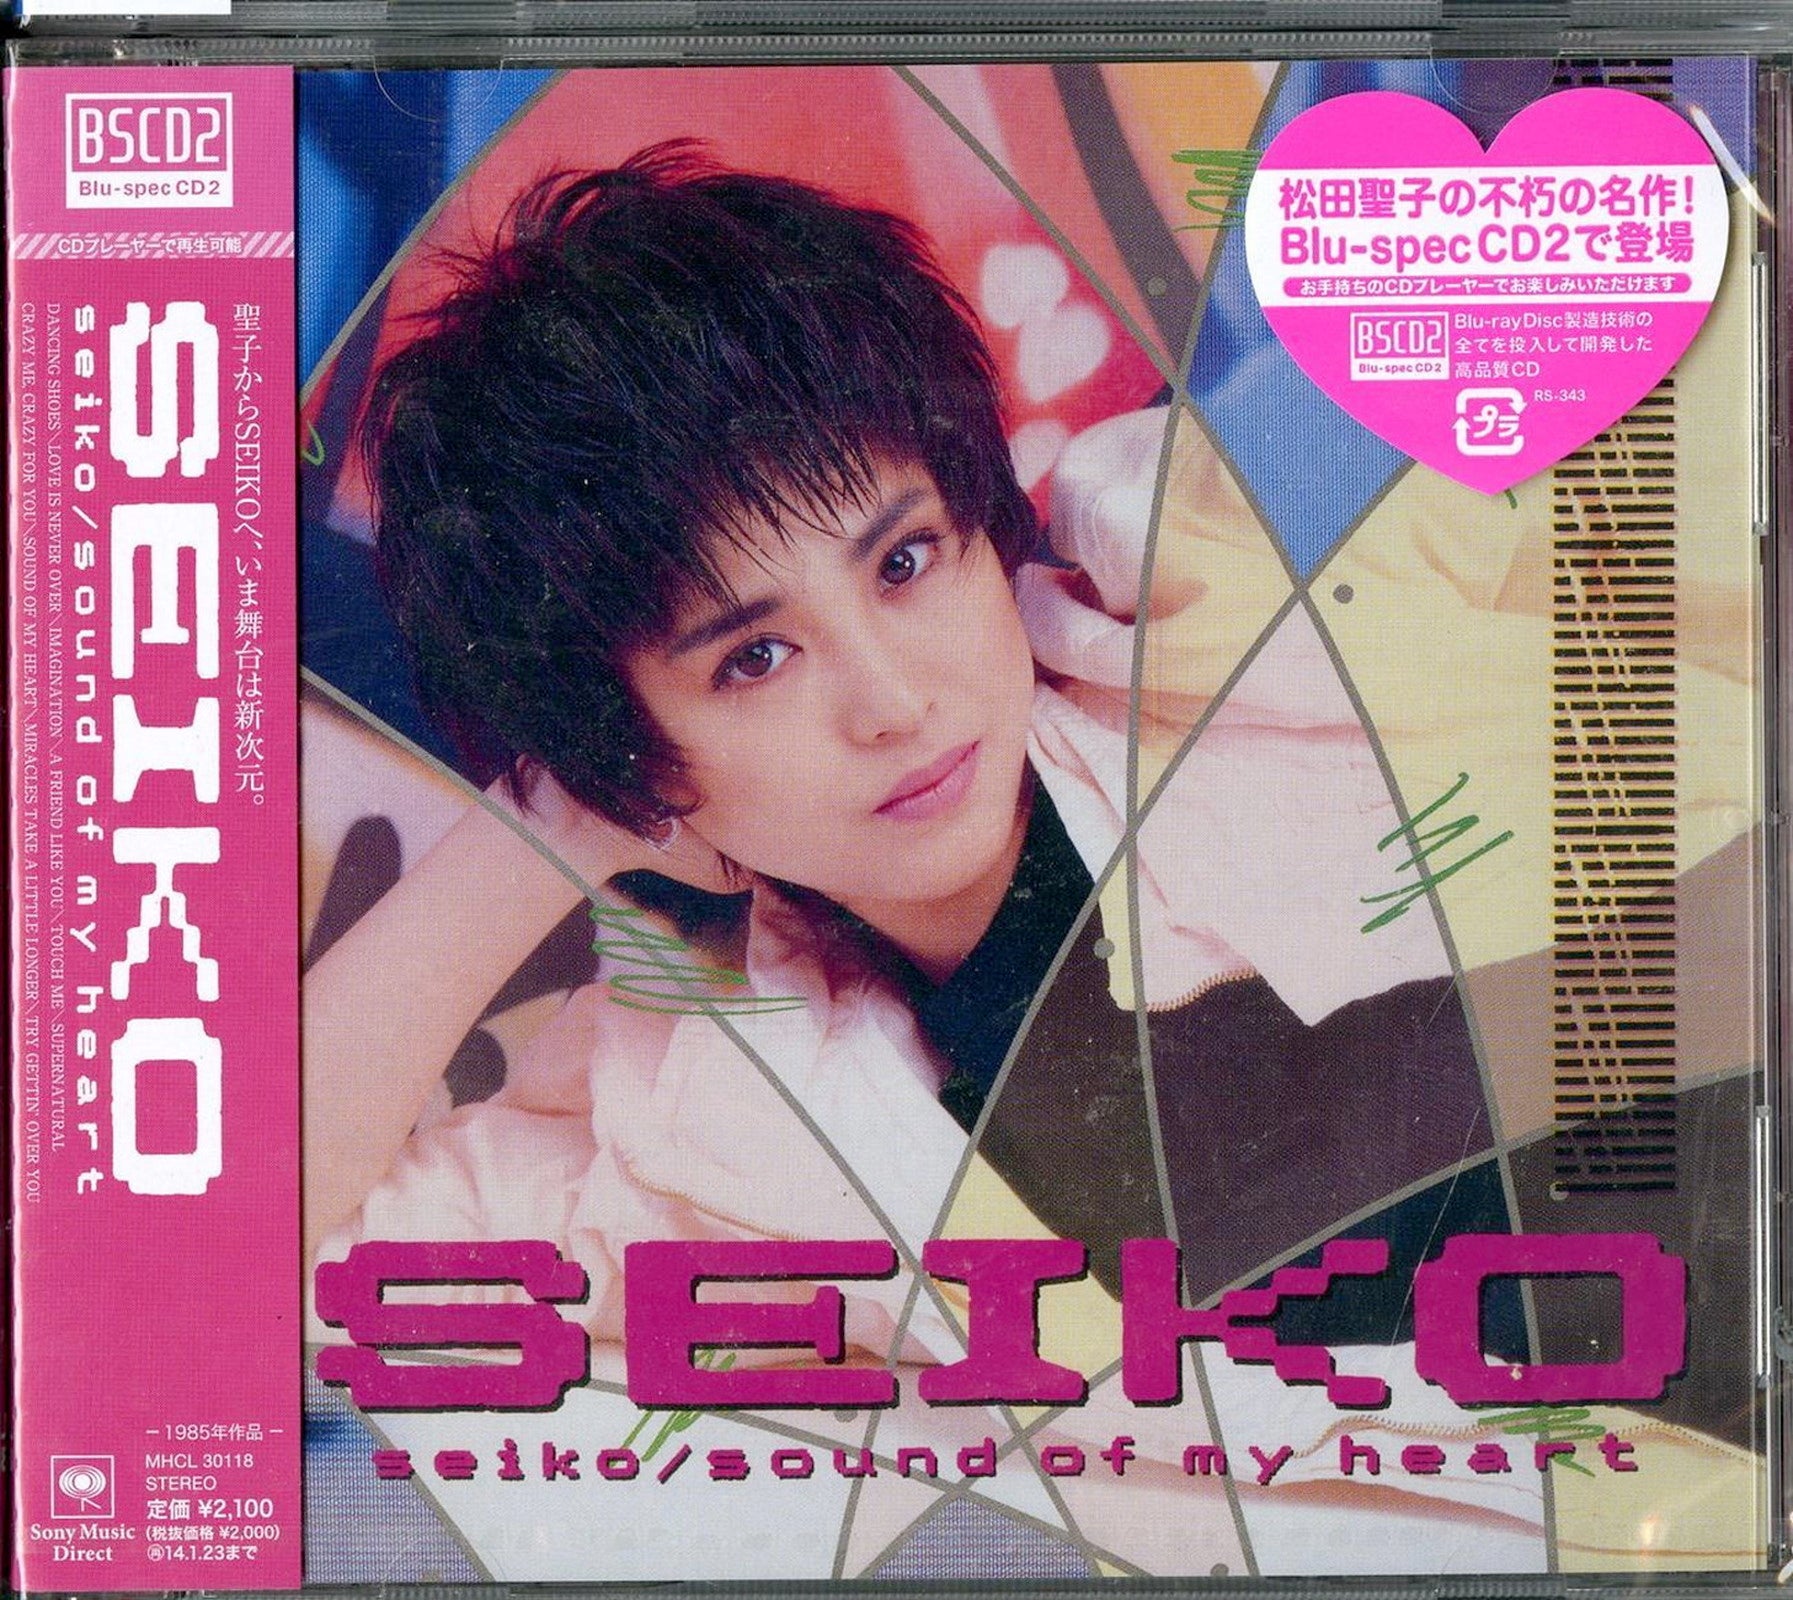 松田聖子 Seiko - Sound of My Heart カセットテープ - 邦楽